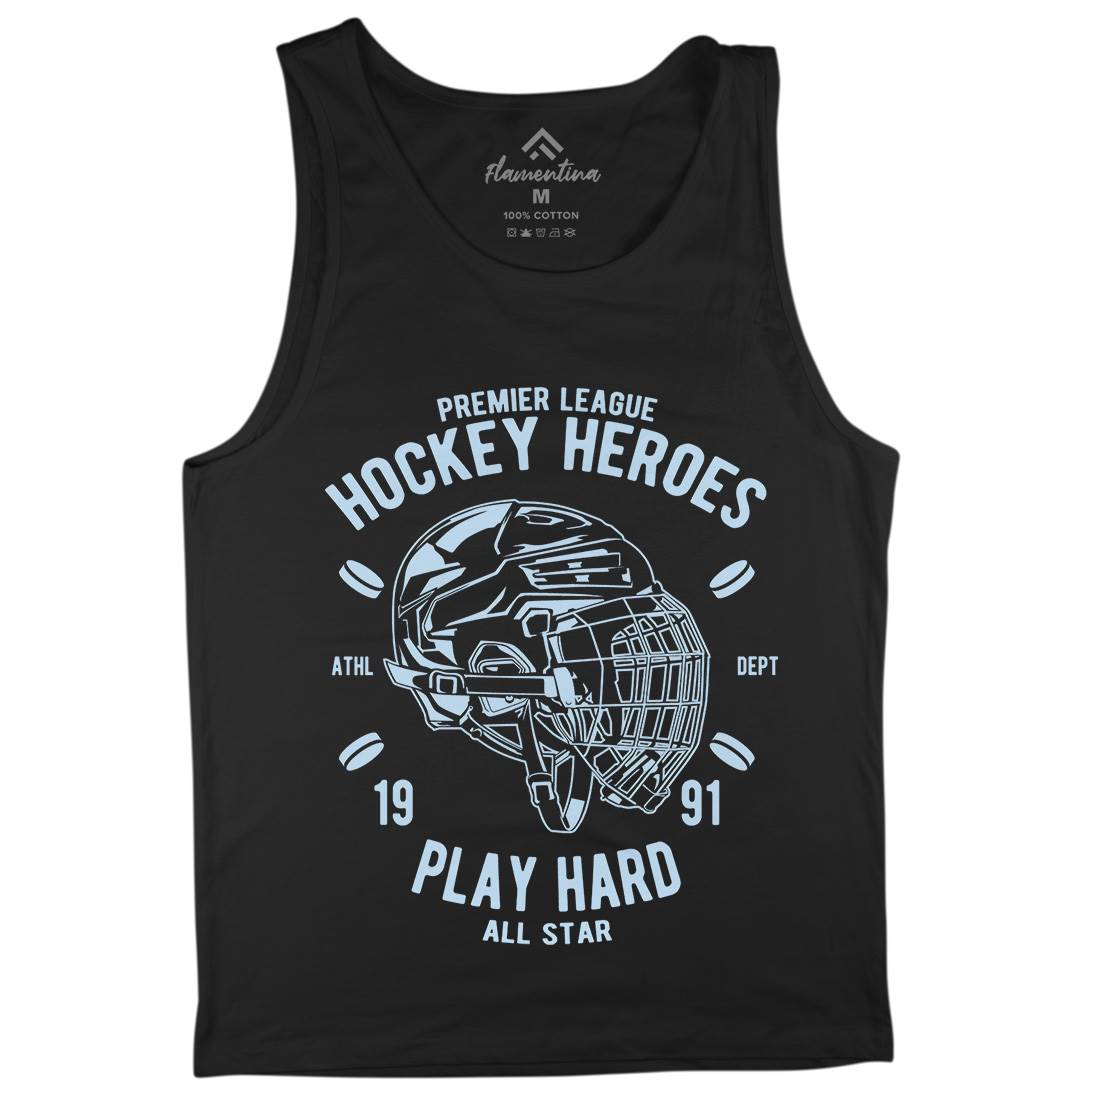 Hockey Heroes Mens Tank Top Vest Sport A064